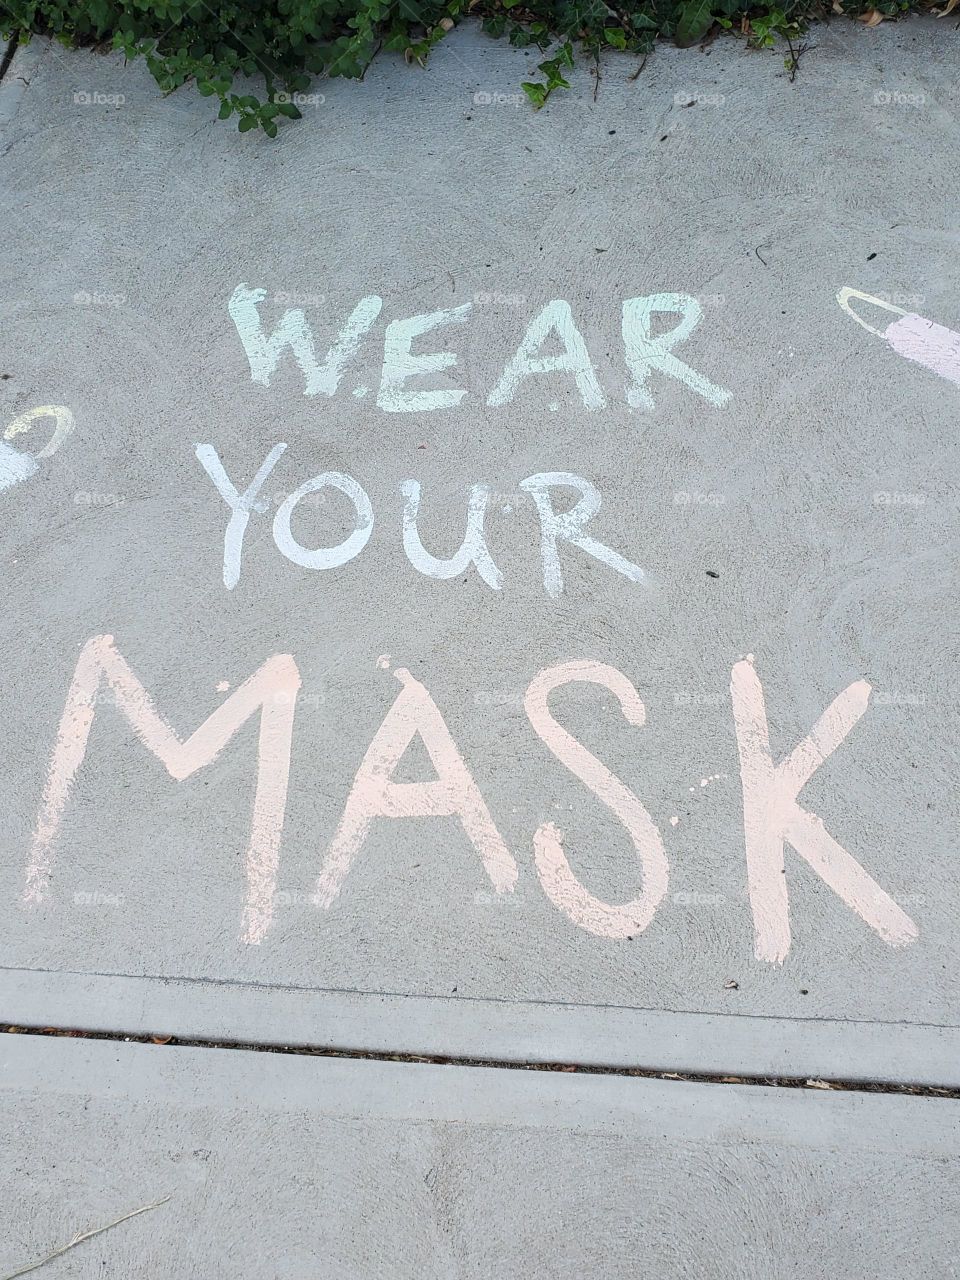 a message to wear a mask written on the sidewalk